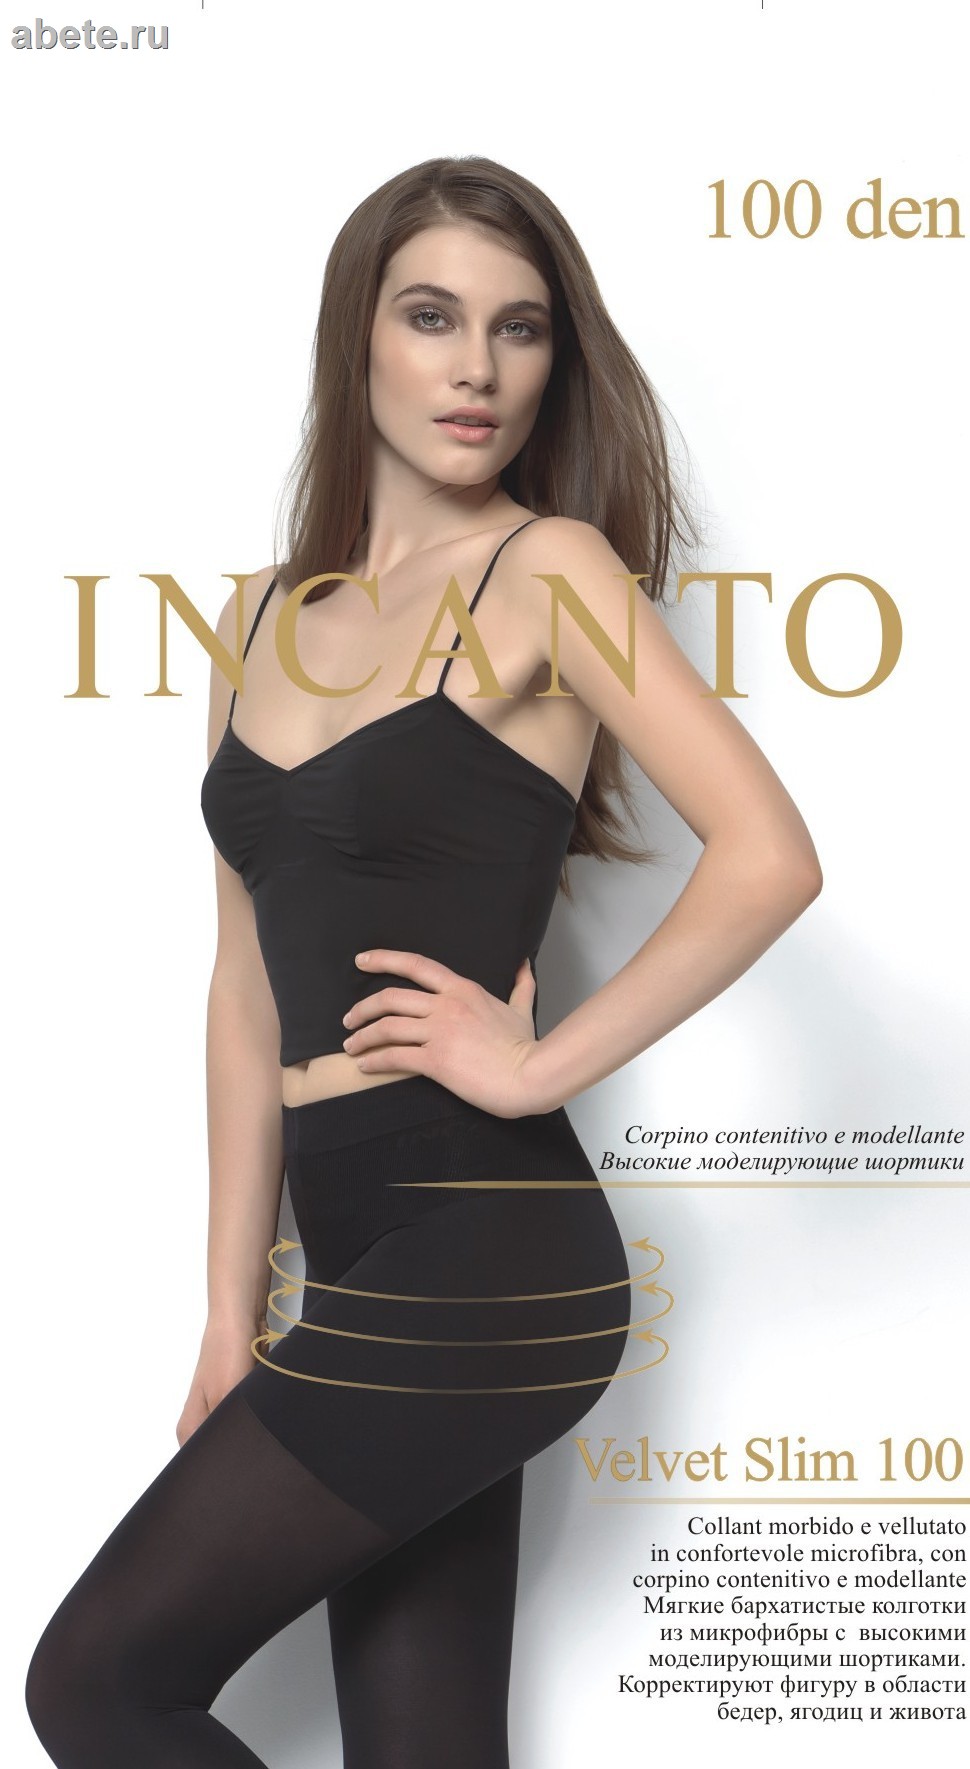 Купить утягивающие колготки Incanto, интернет магазин утягивающих колготок  Инканто. Москва